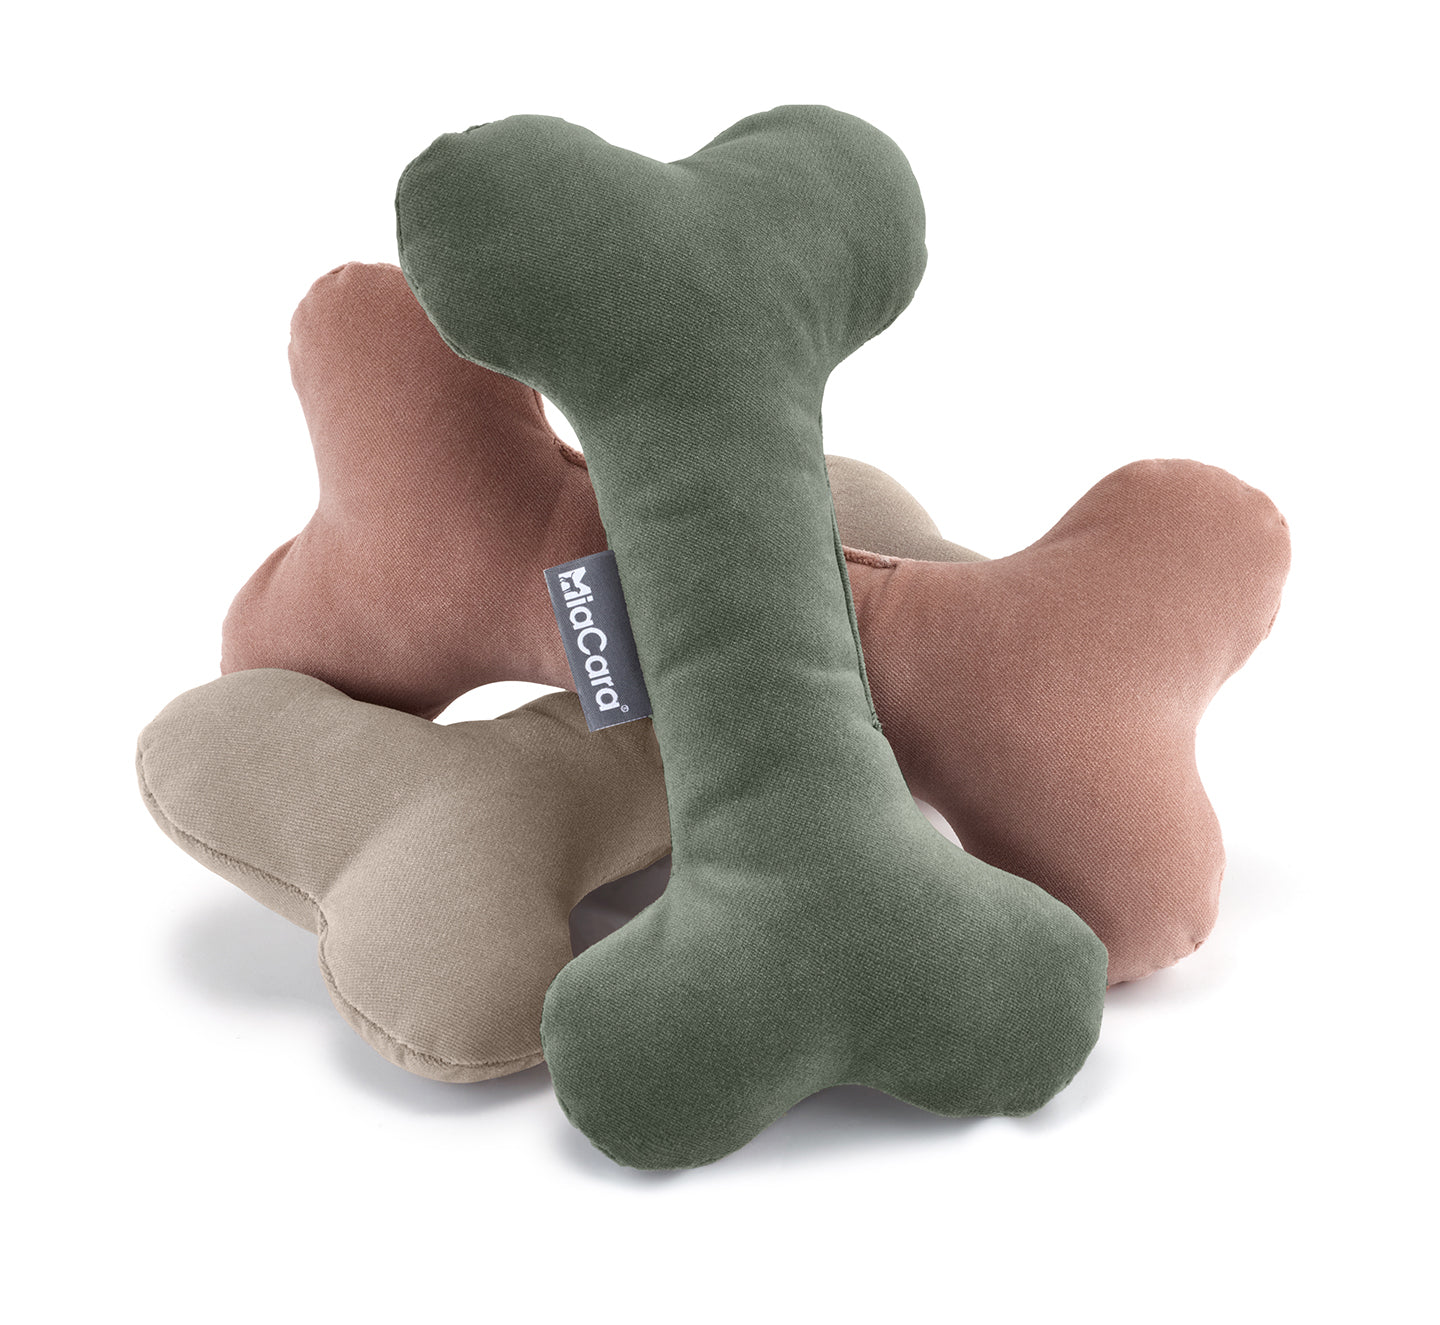       MiaCara Velluto Spielknochen Nude Greige Salbei weiches Hundespielzeug